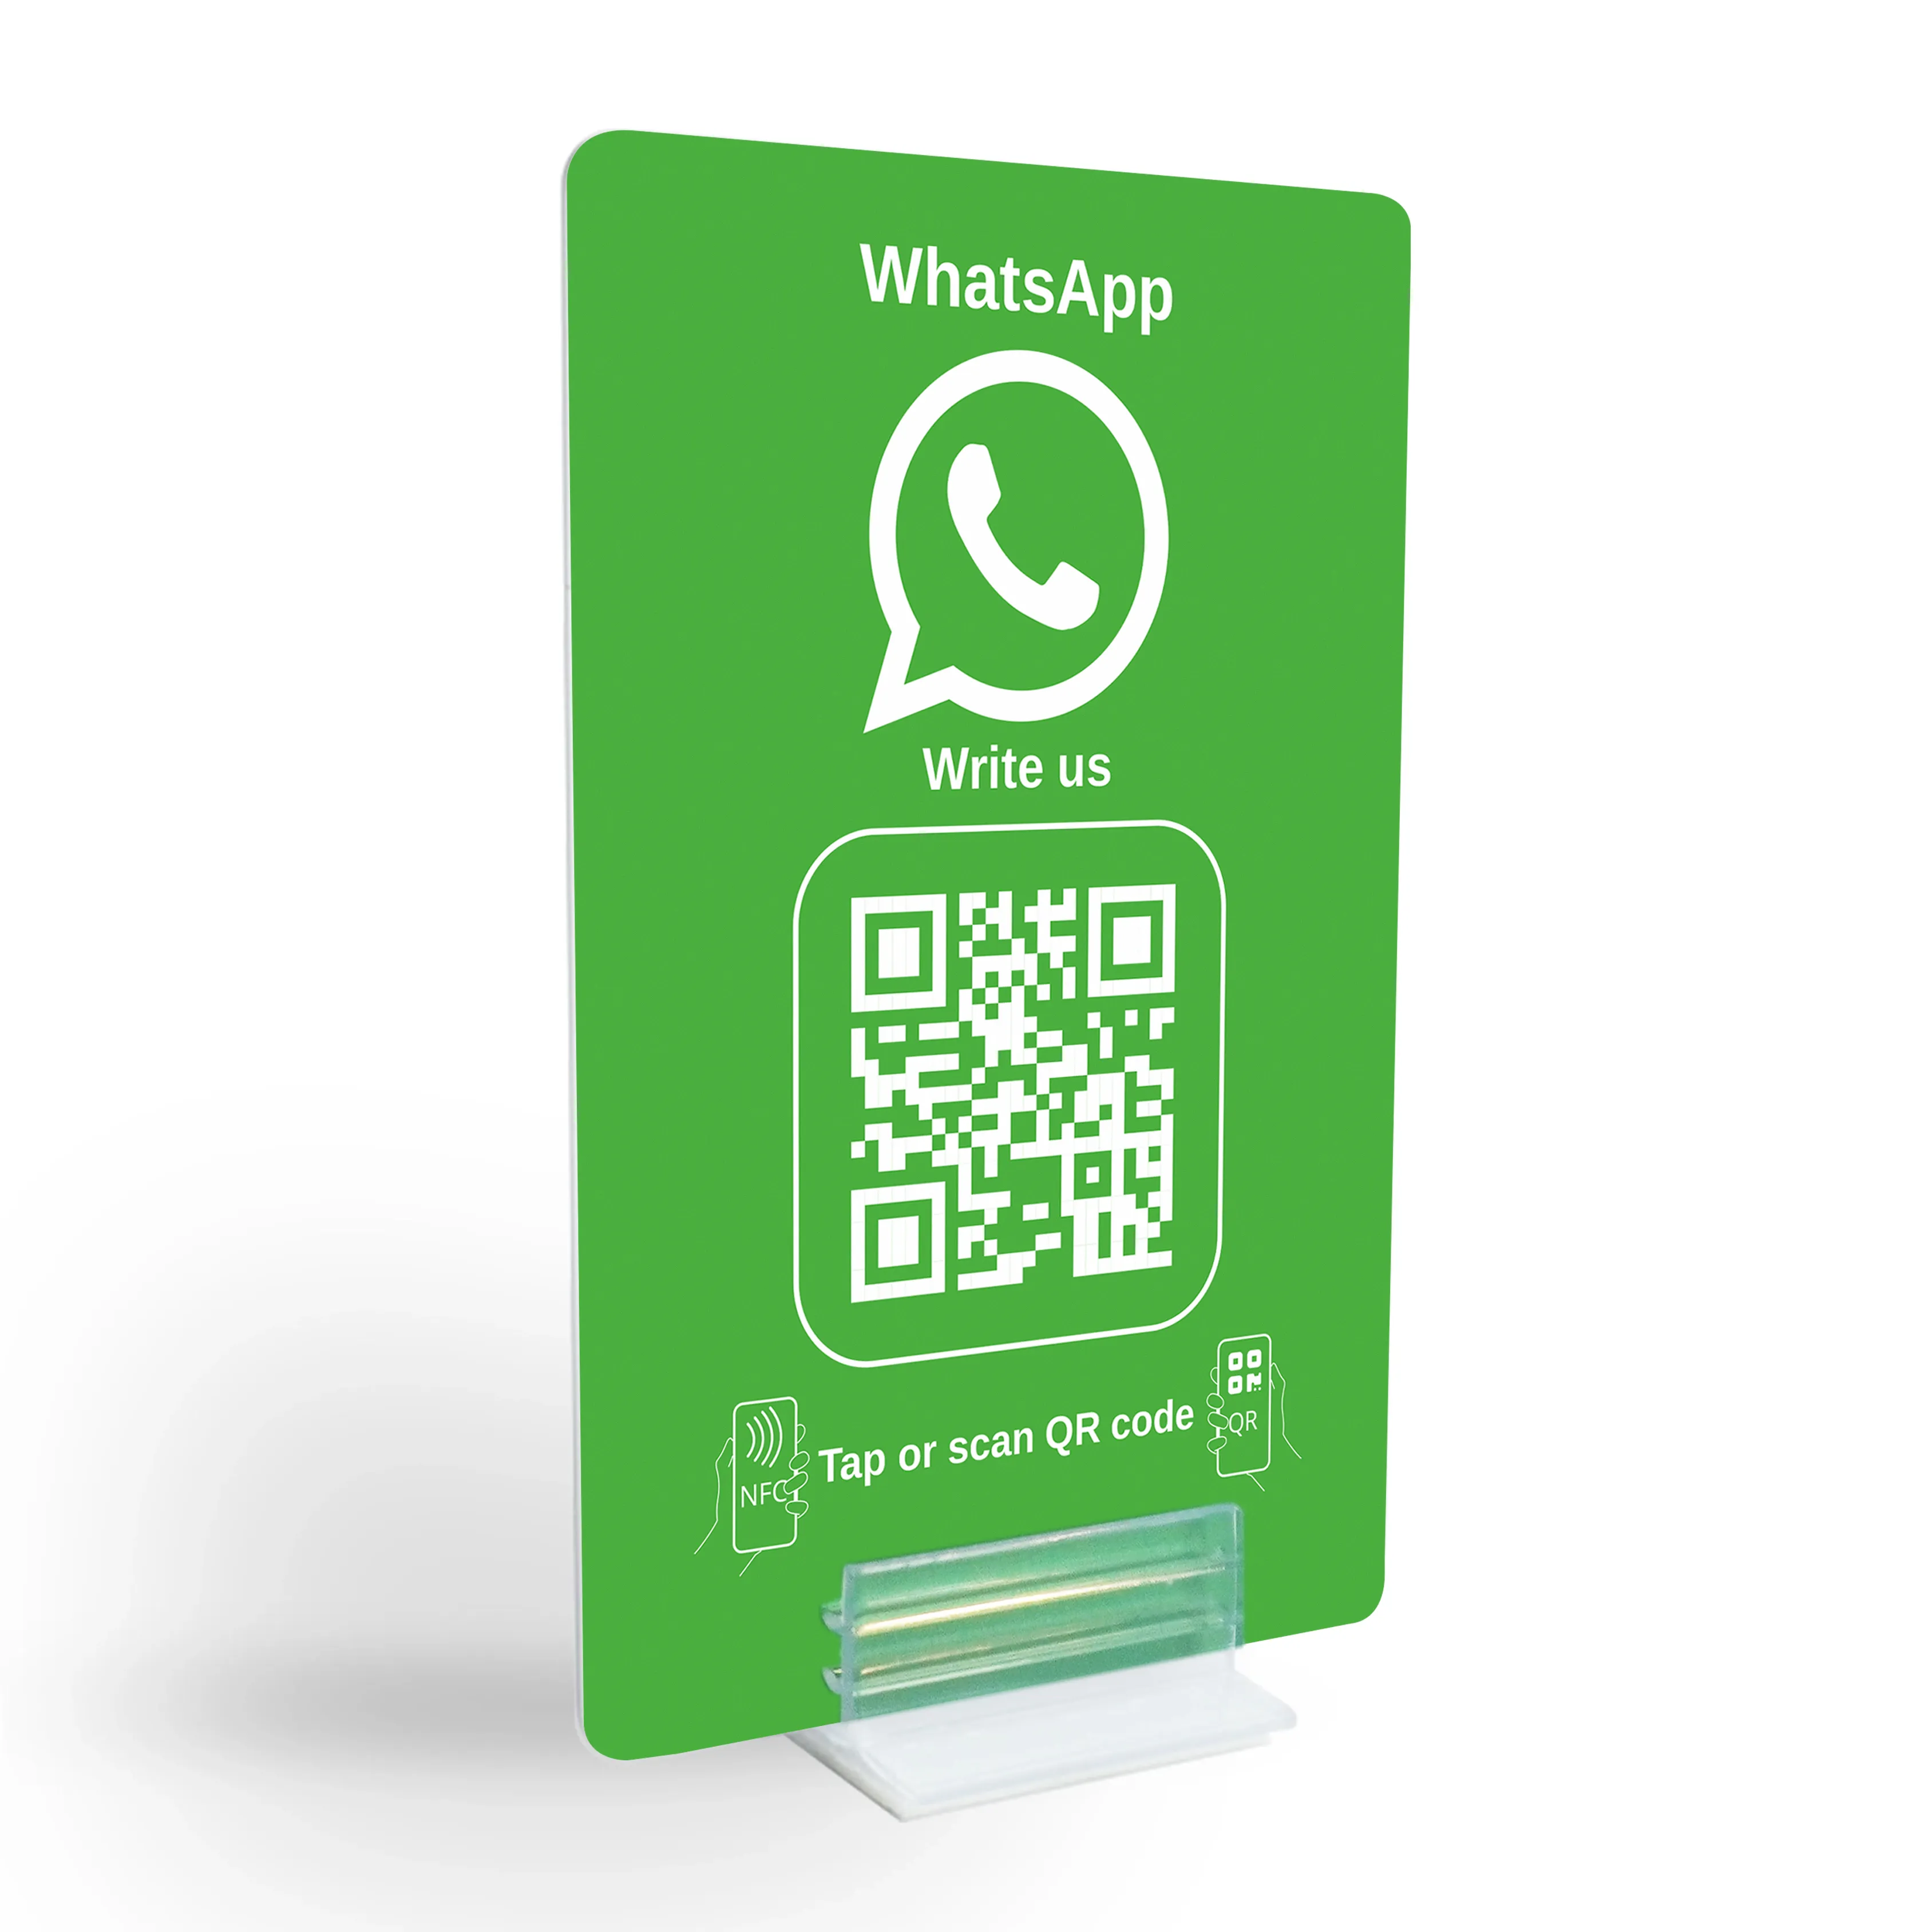 WhatsApp Direct Connect - Visualizzazione del codice NFC/QR per un contatto immediato con il cliente